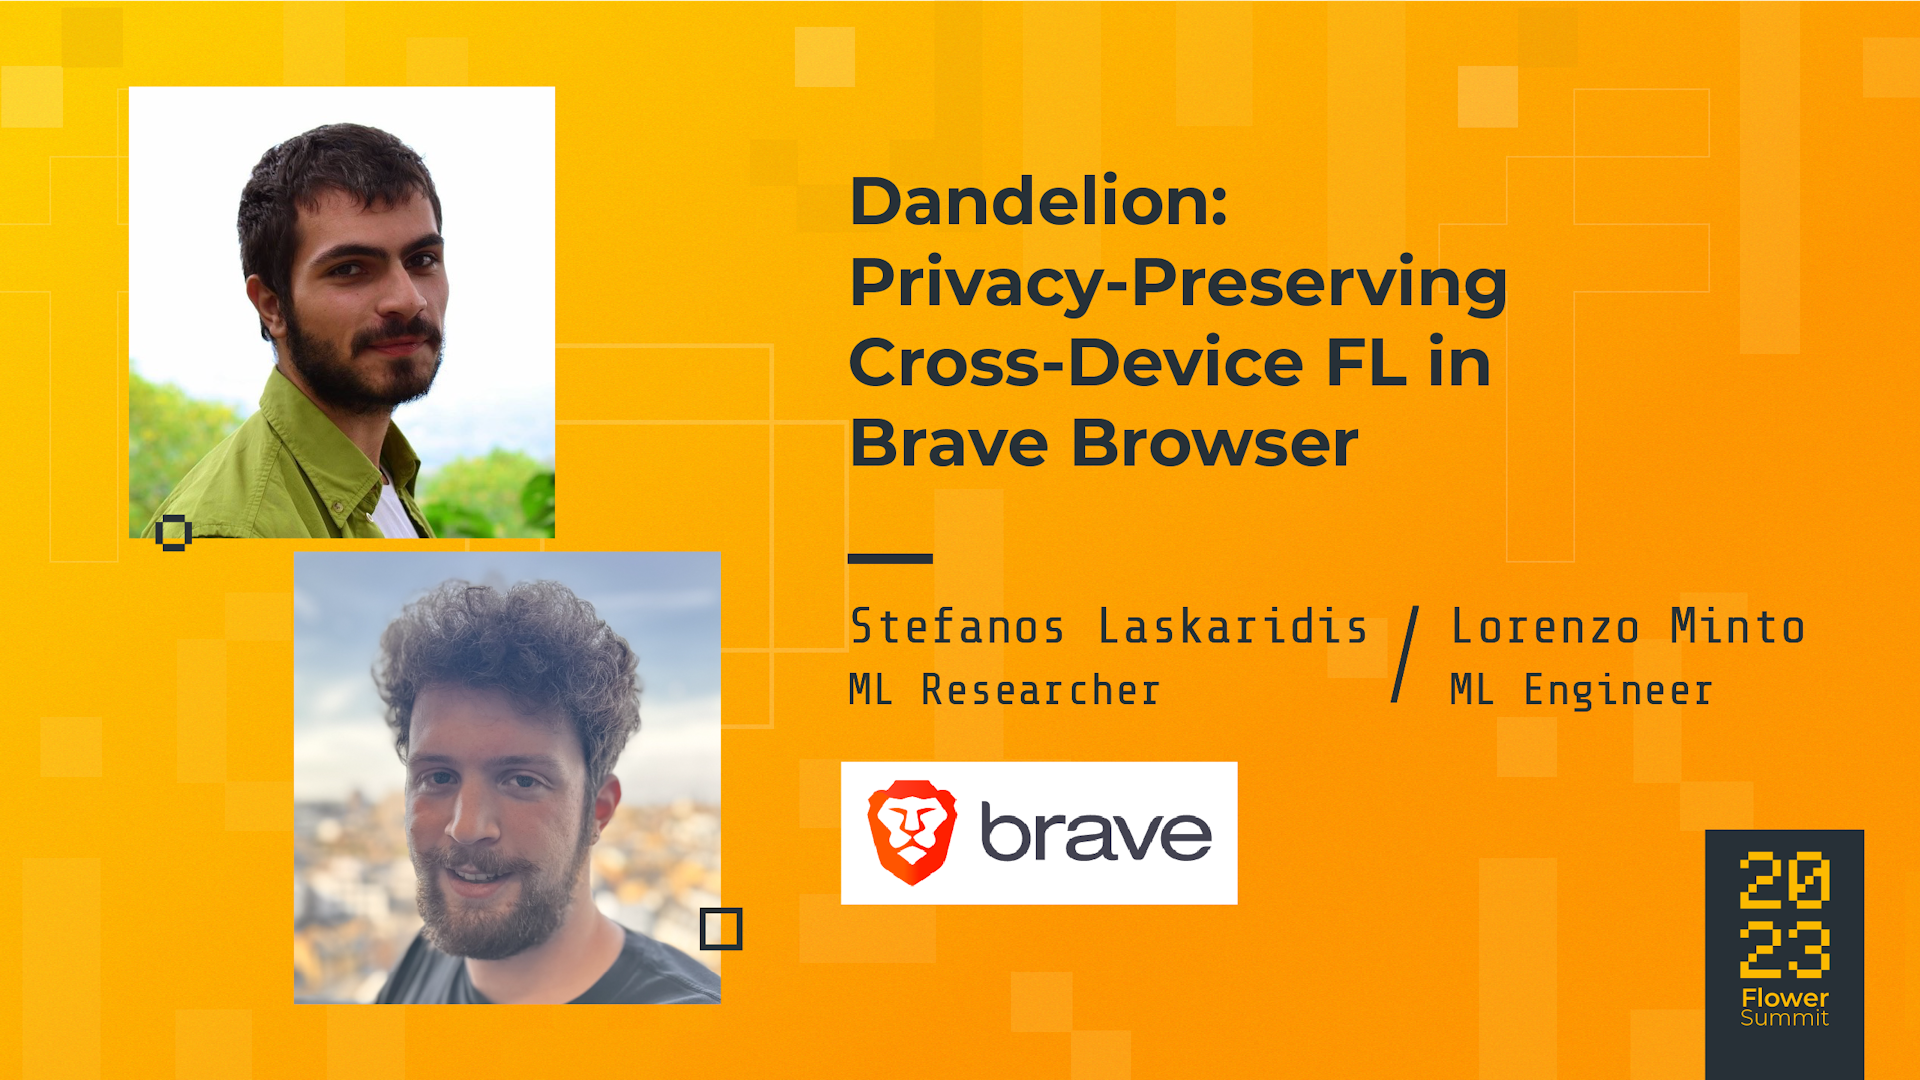 Dandelion: Privacy-Preserving Cross-Device FL in Brave Browser